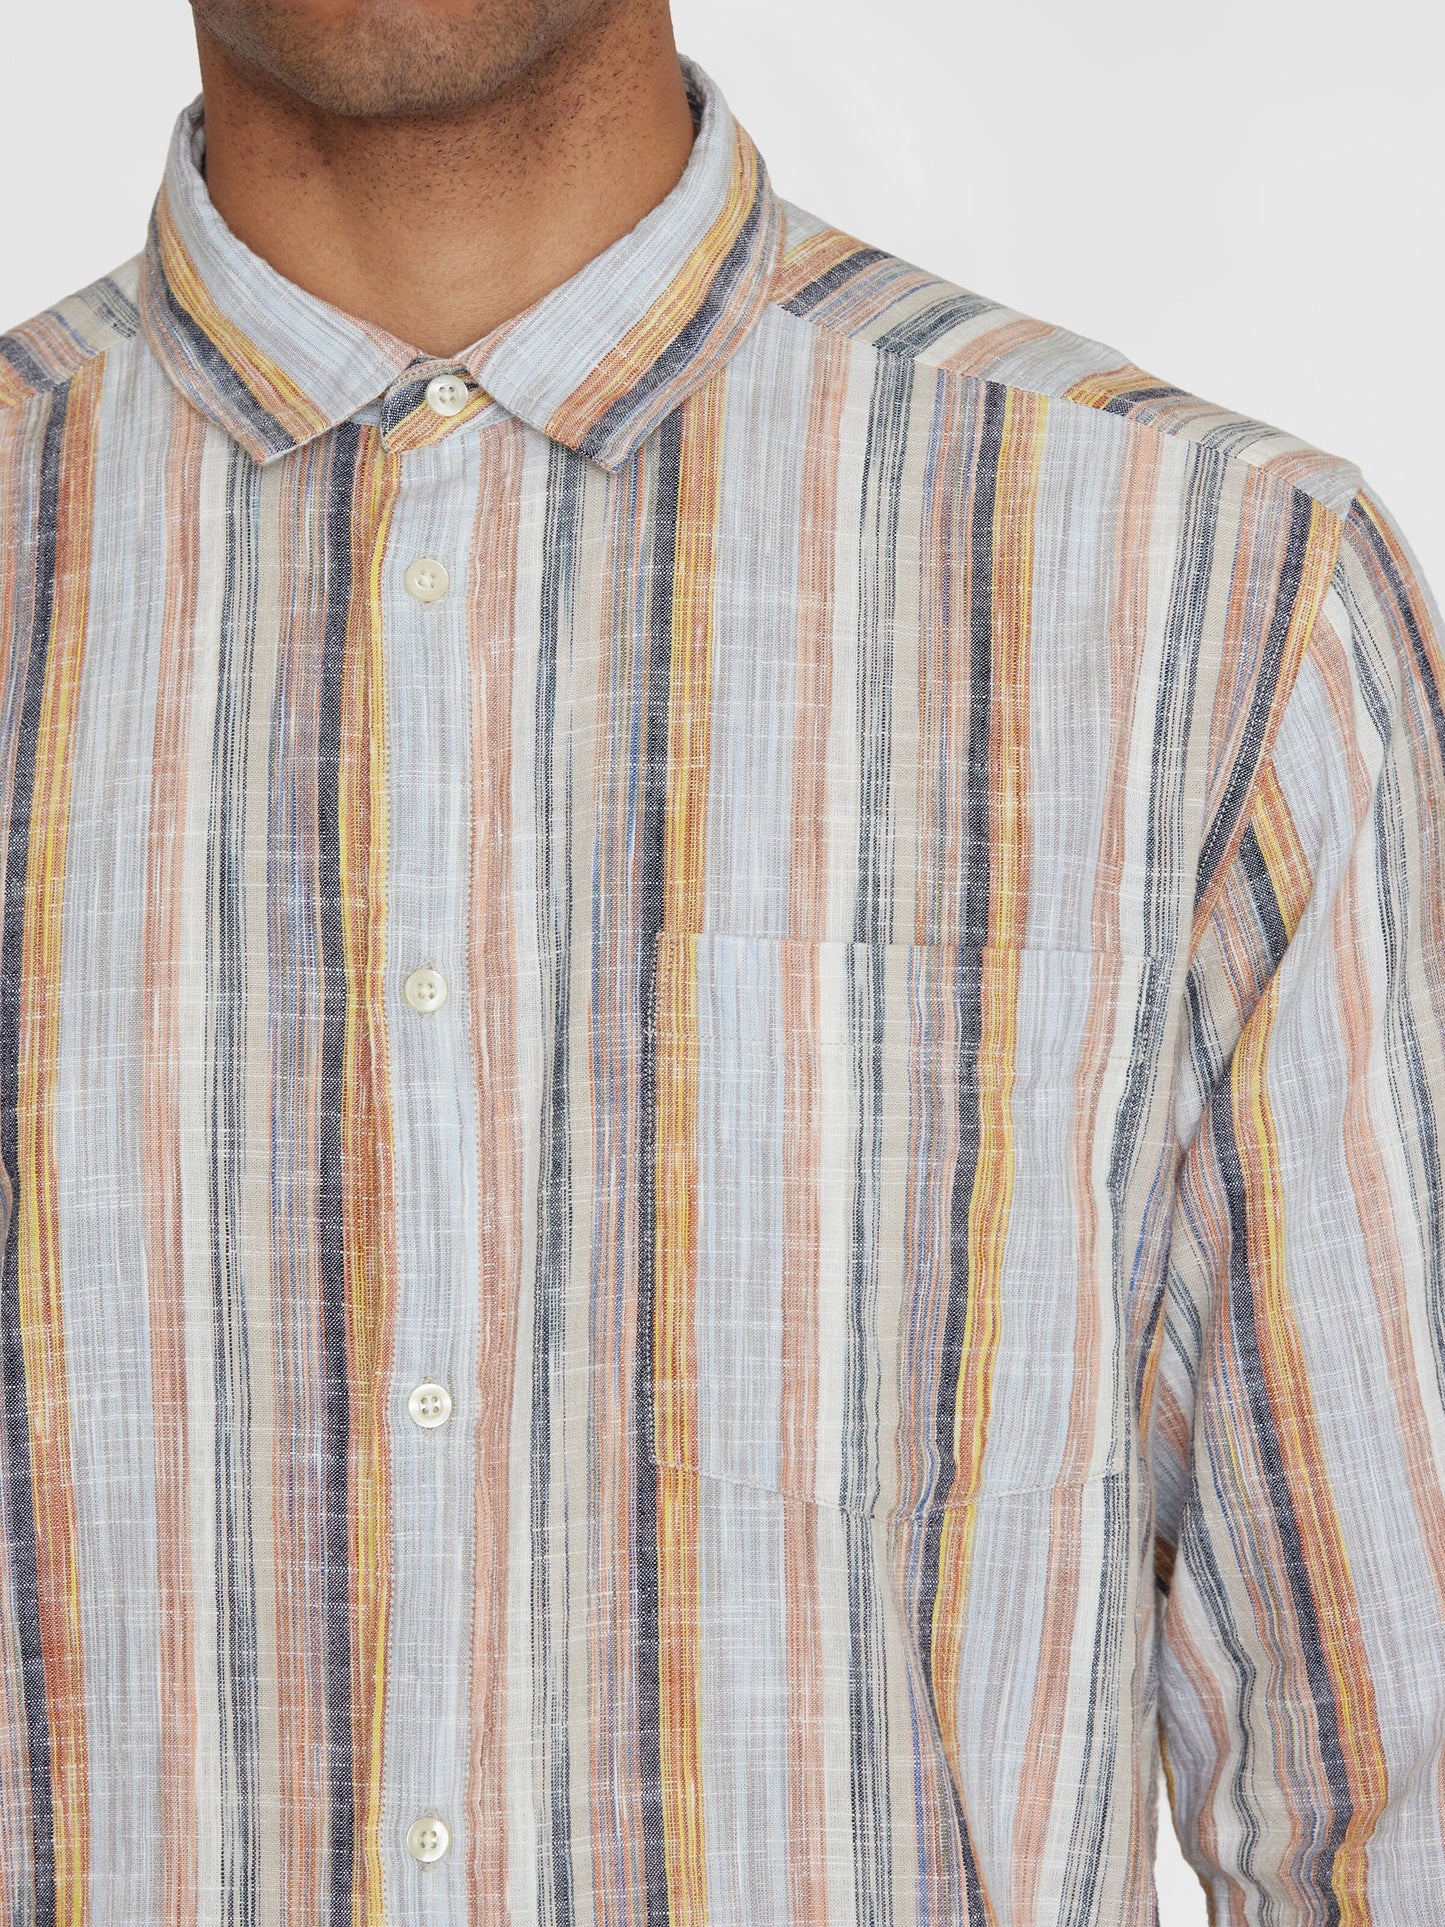 KCA - Loose multicolored striped linen shirt Multi color stripe